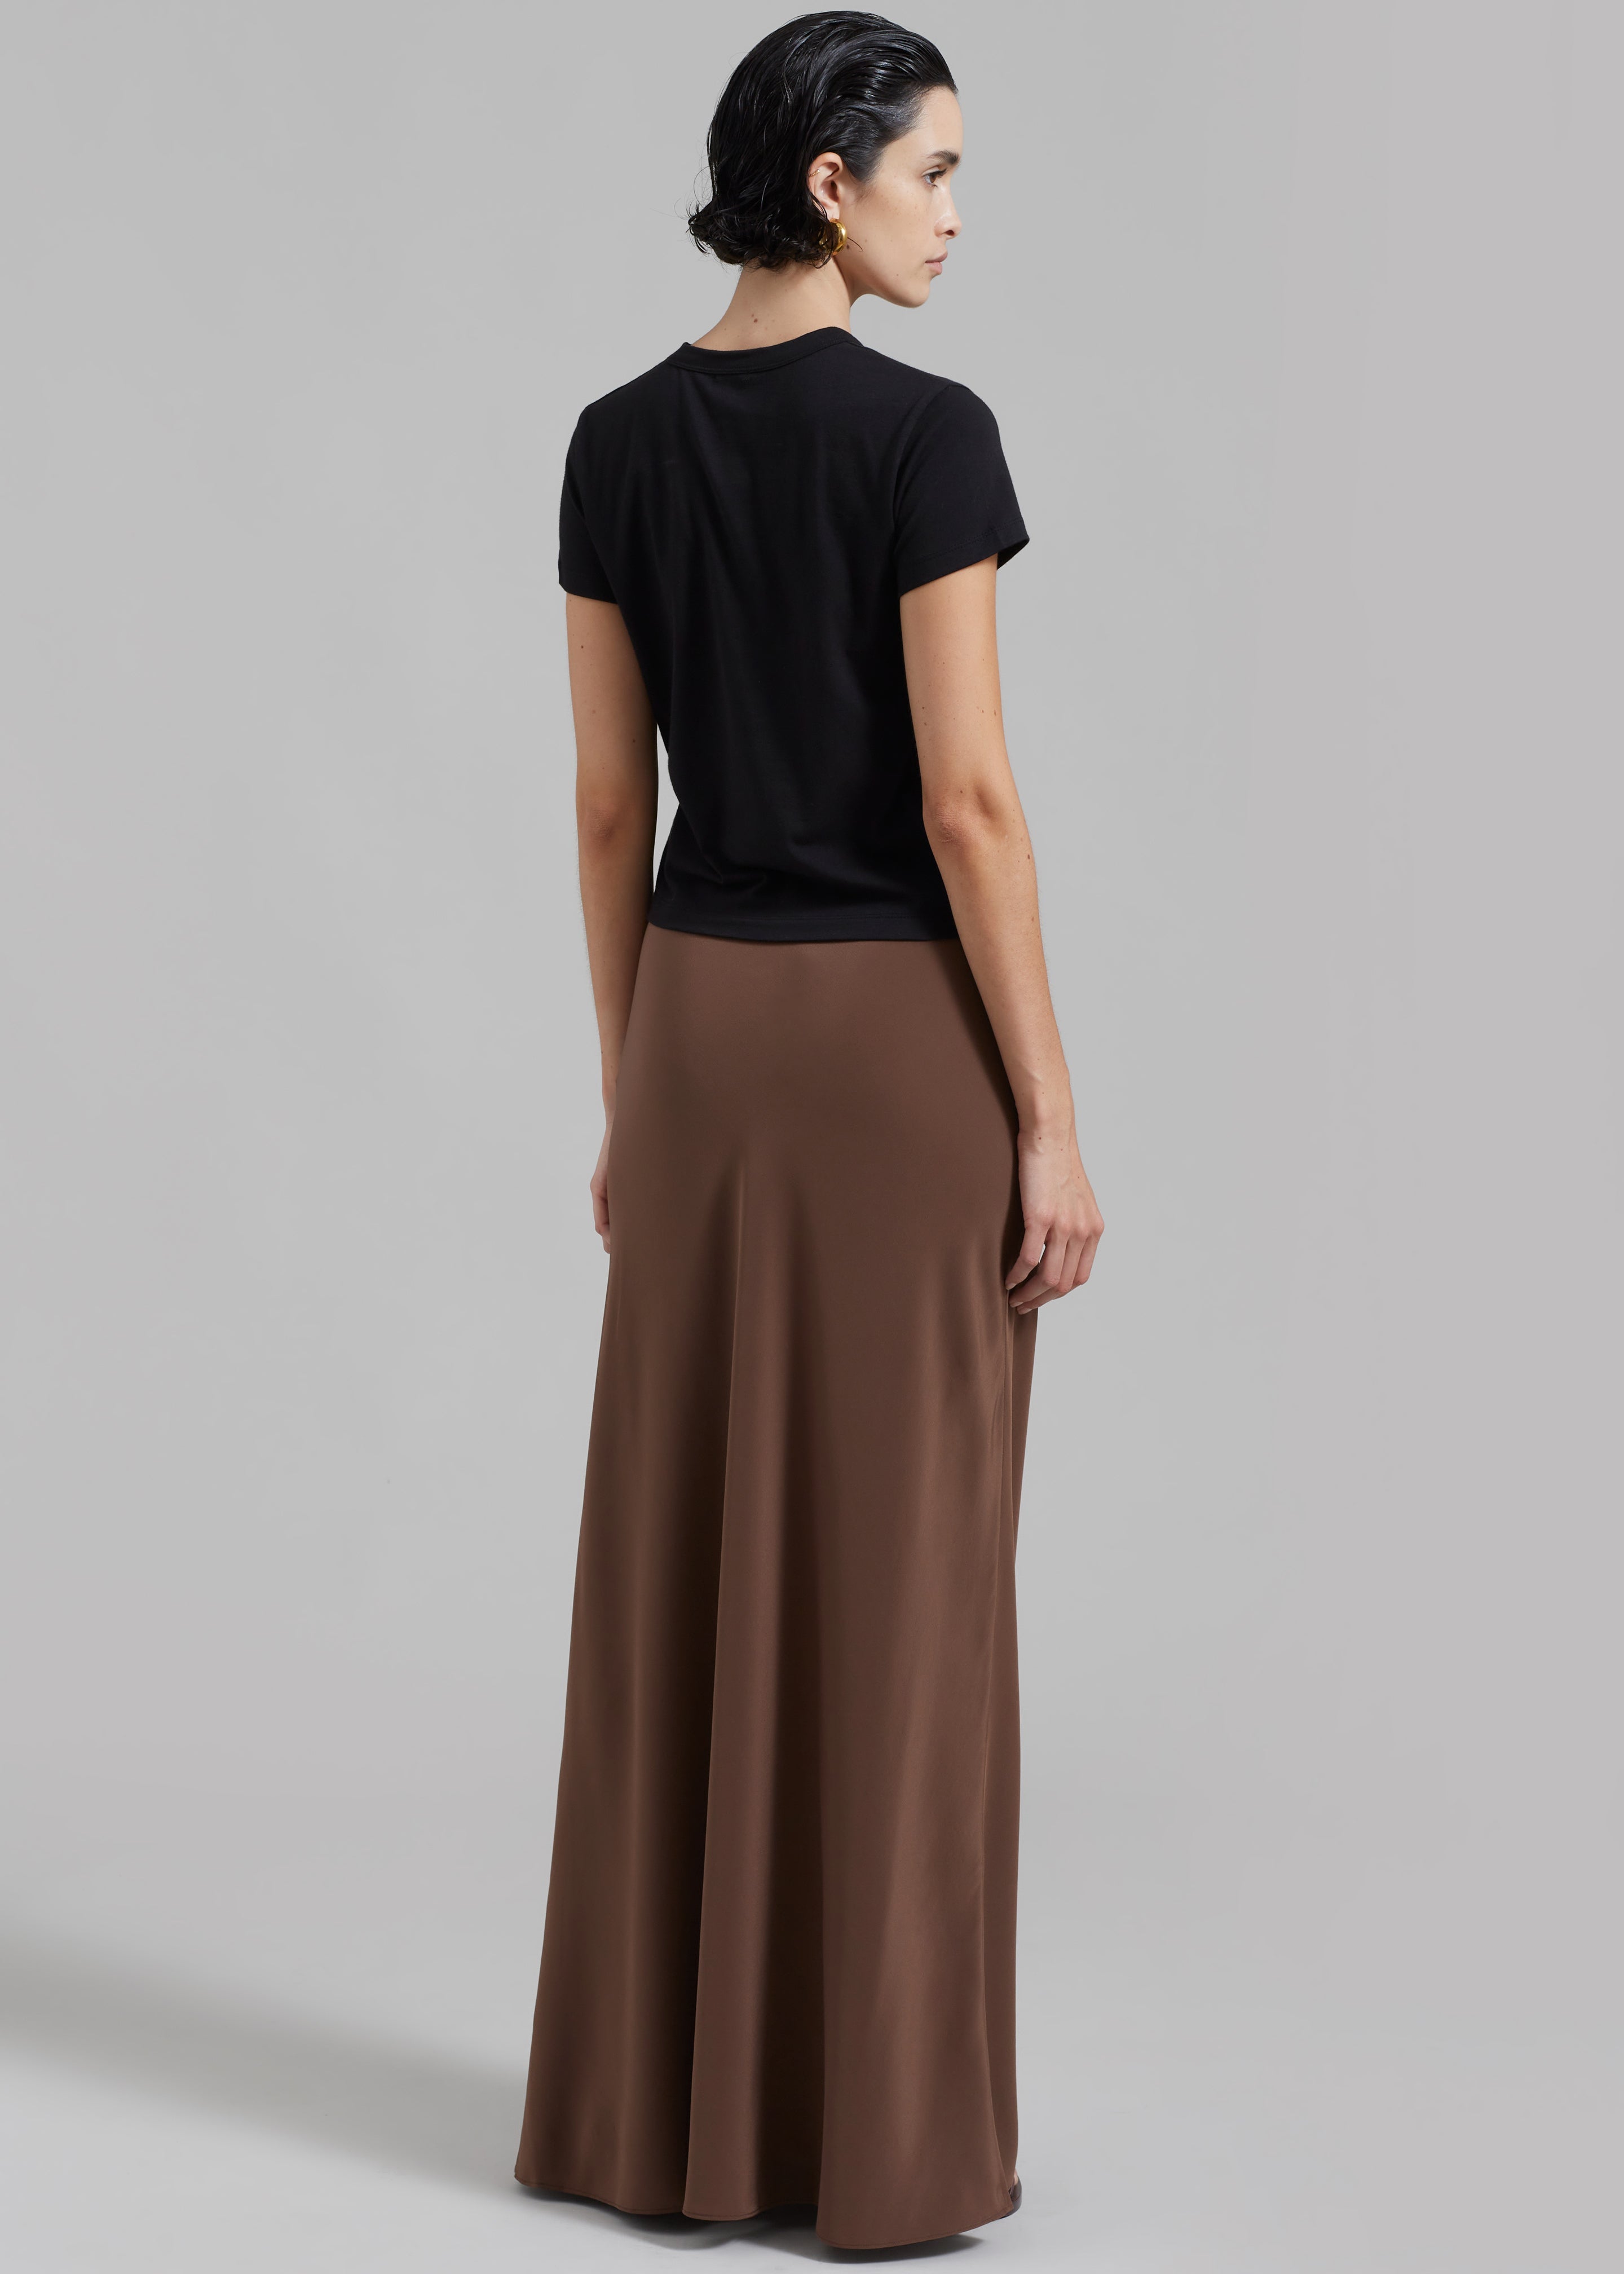 Matteau Bias Elastic Skirt - Sable - 5